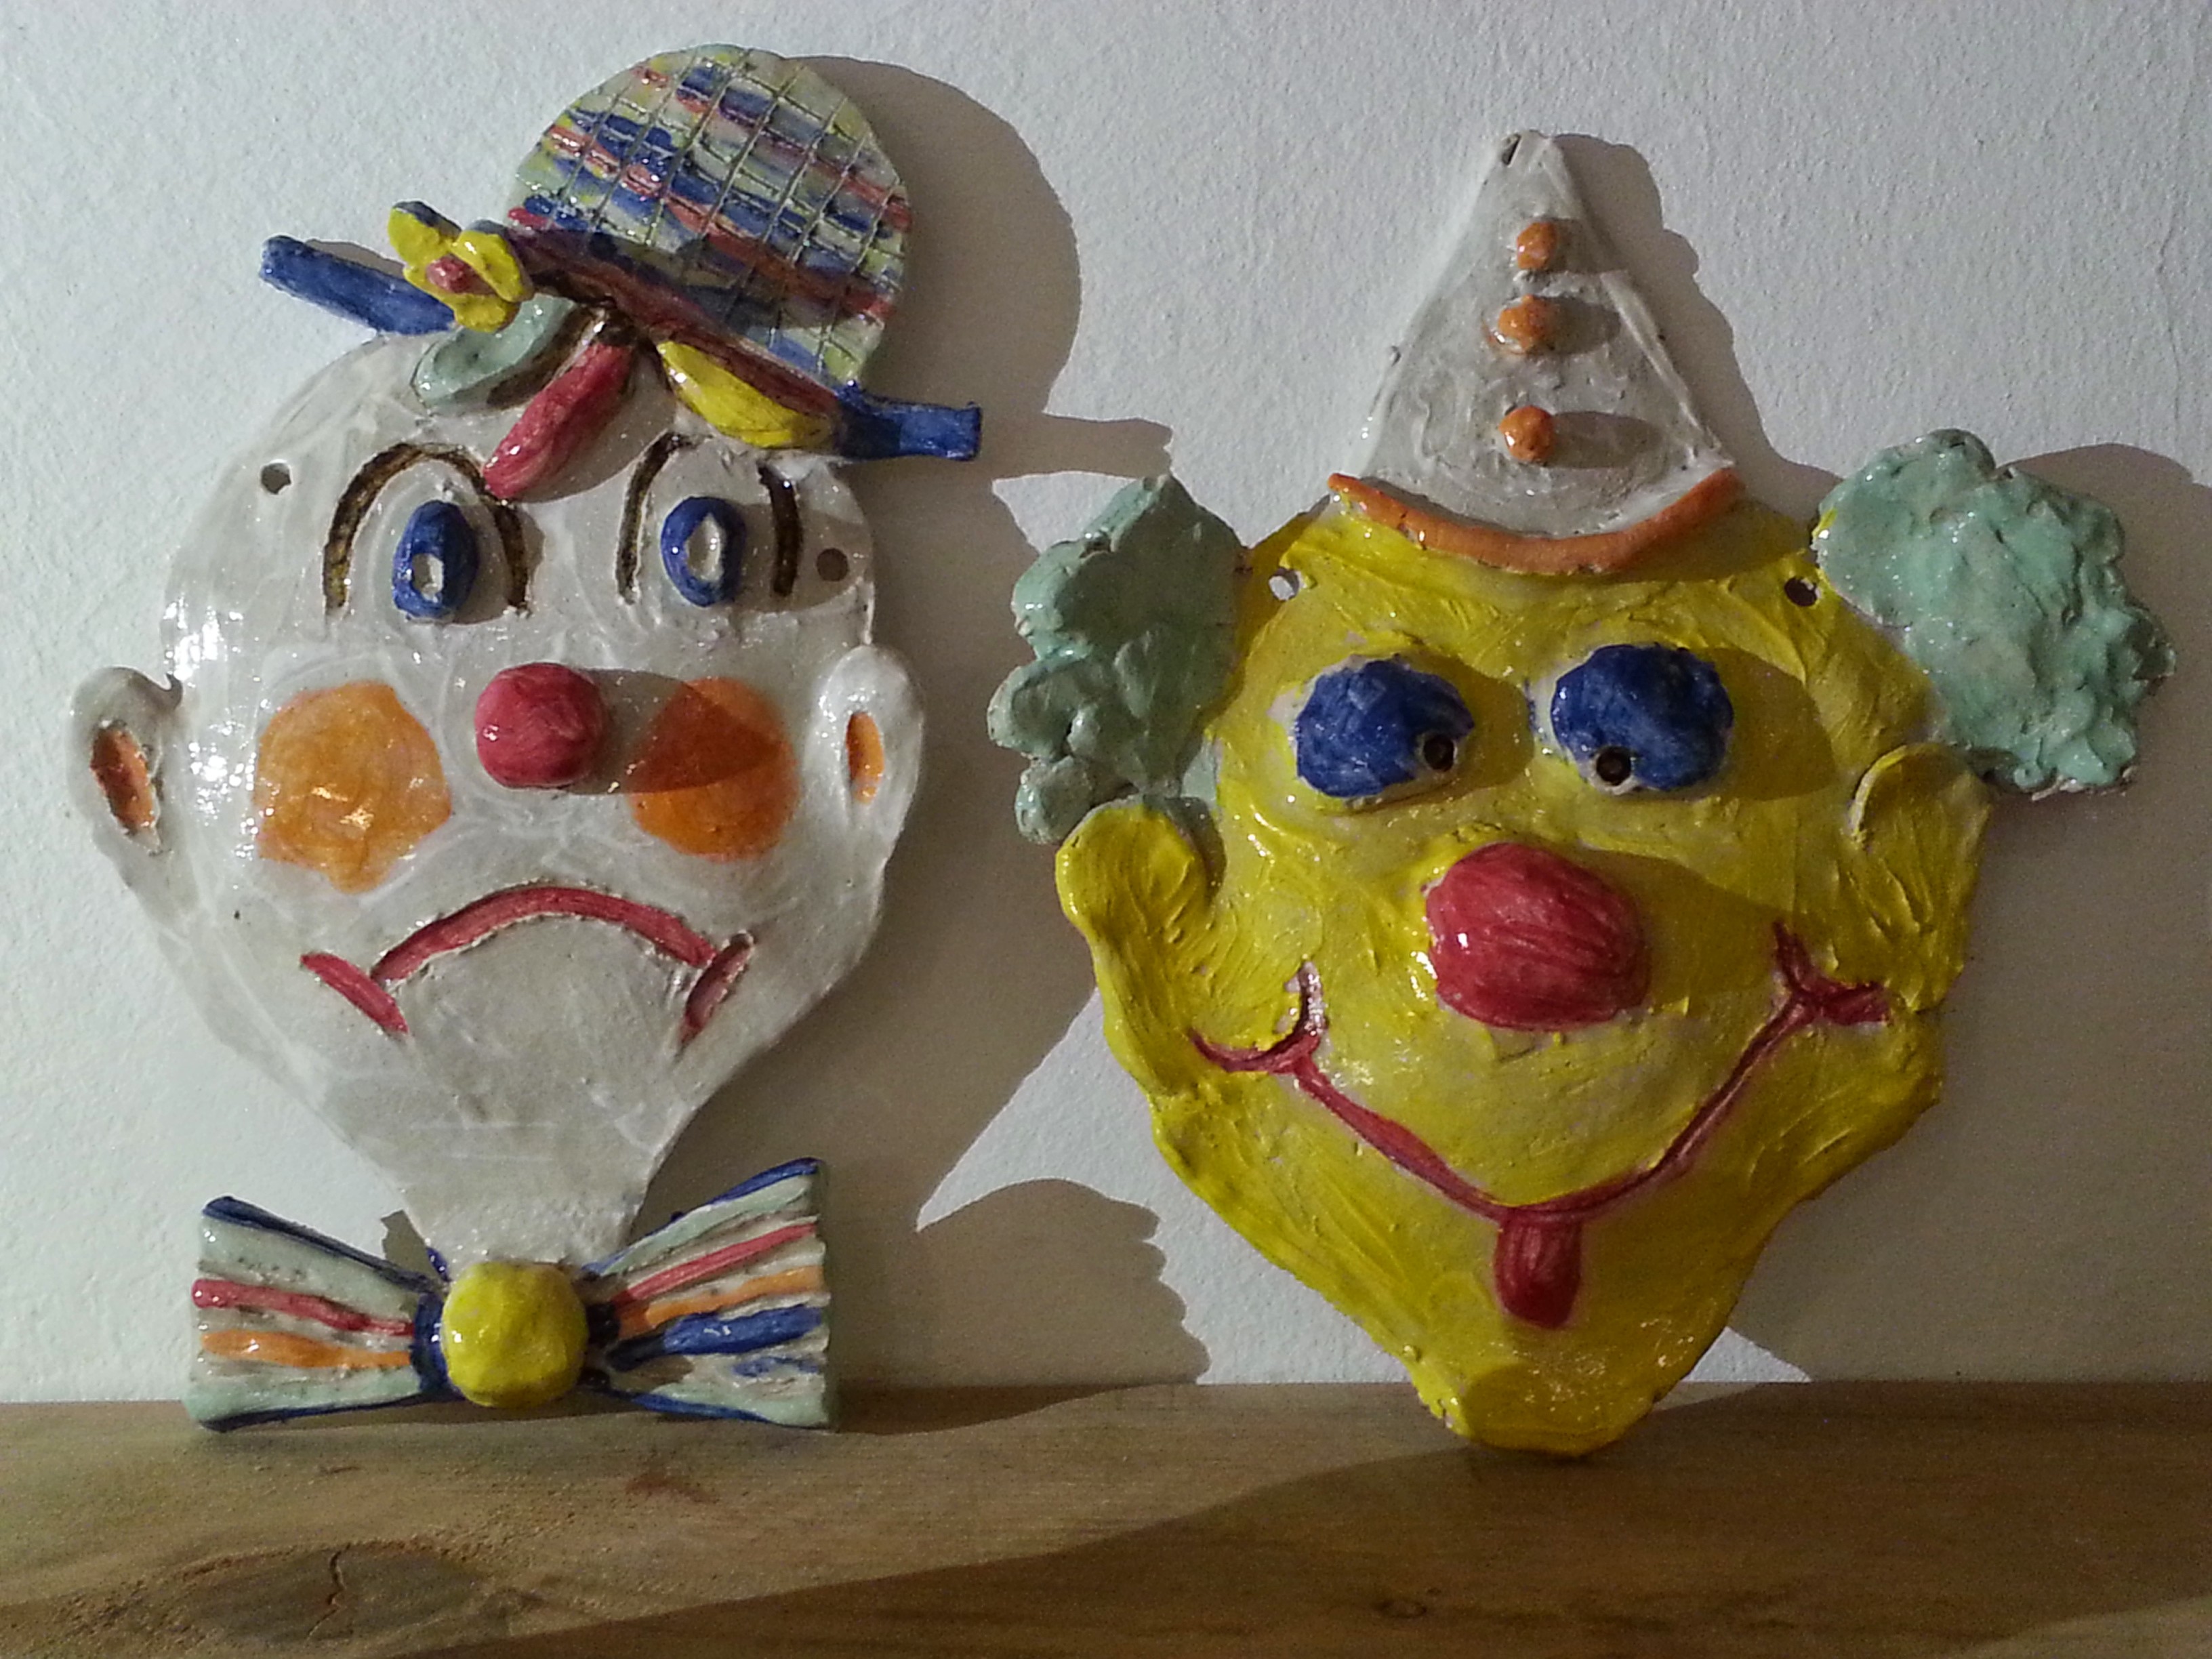 http://terres-etc.com/wp-content/uploads/2014/12/Poterie-enfants-Masques-de-clowns.jpg